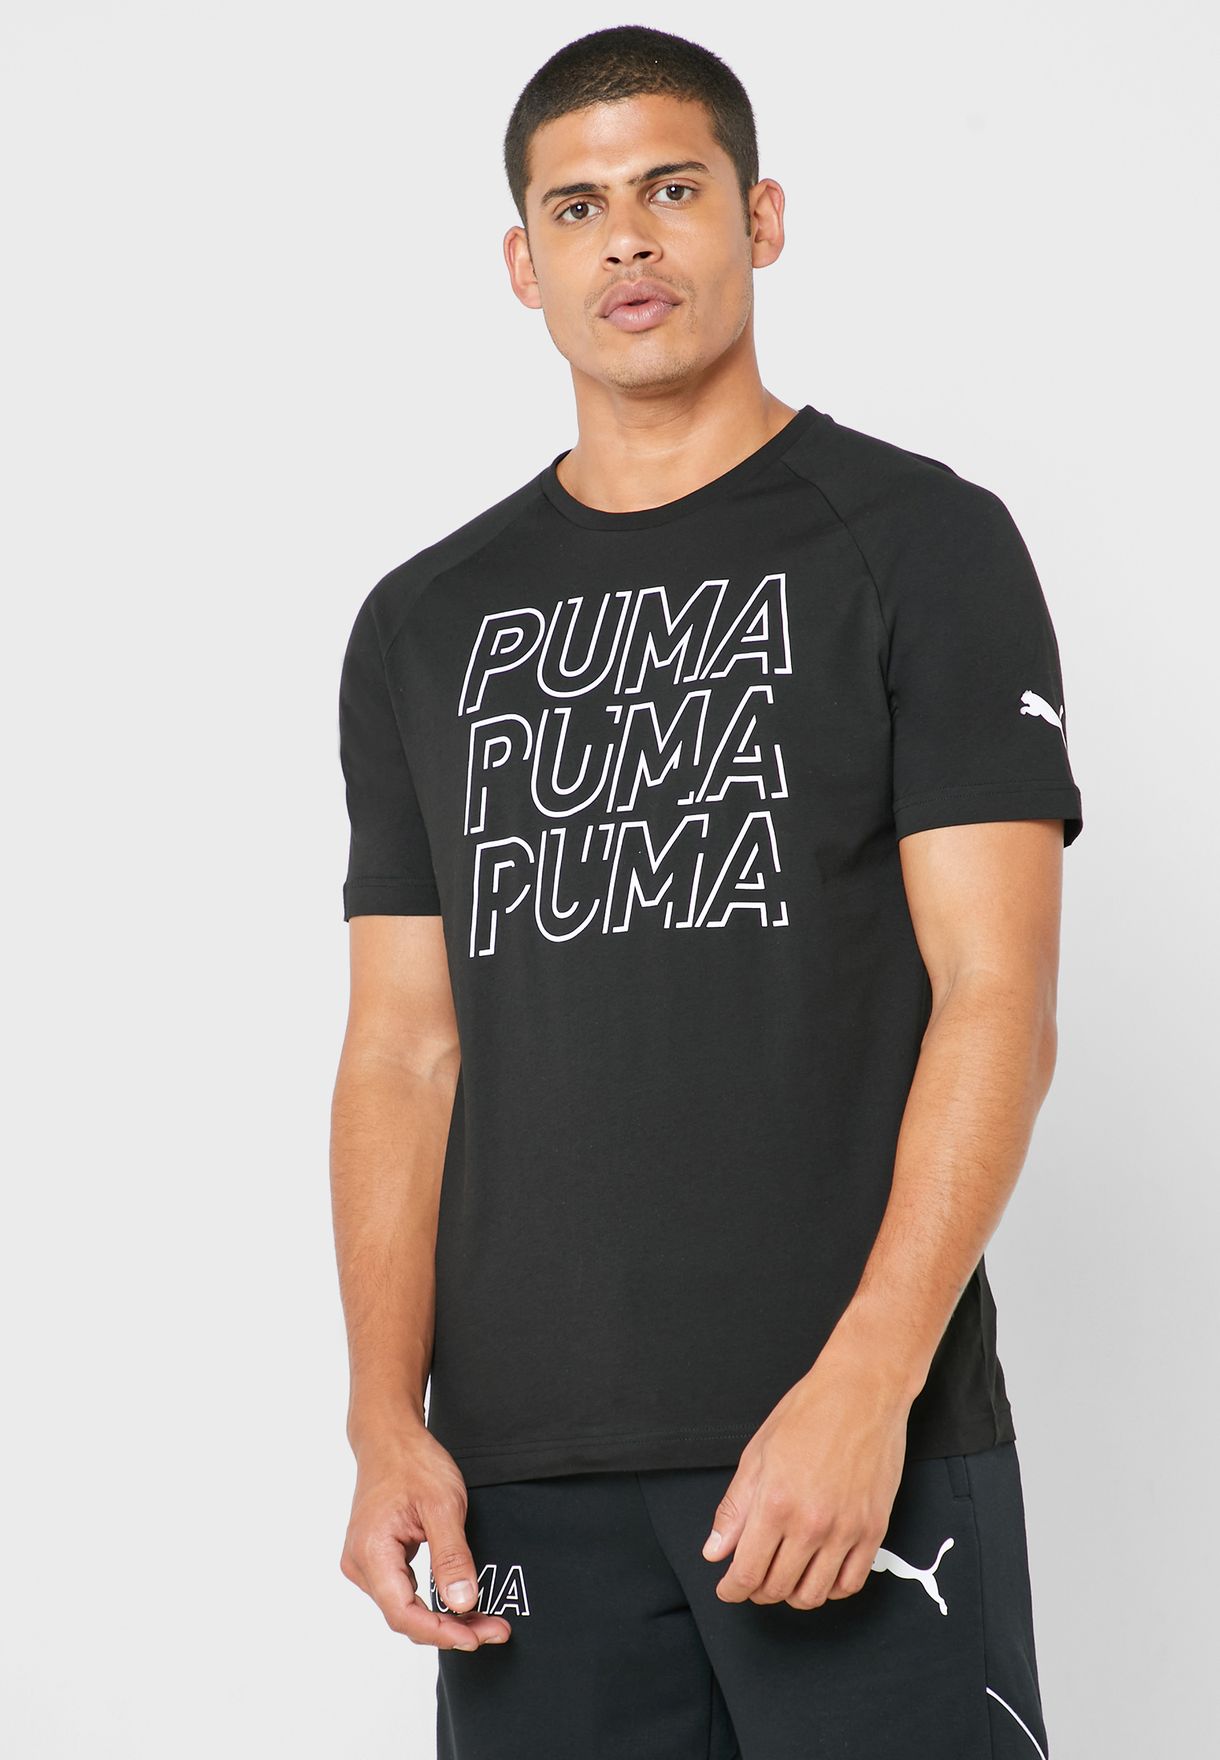 puma sports t shirts